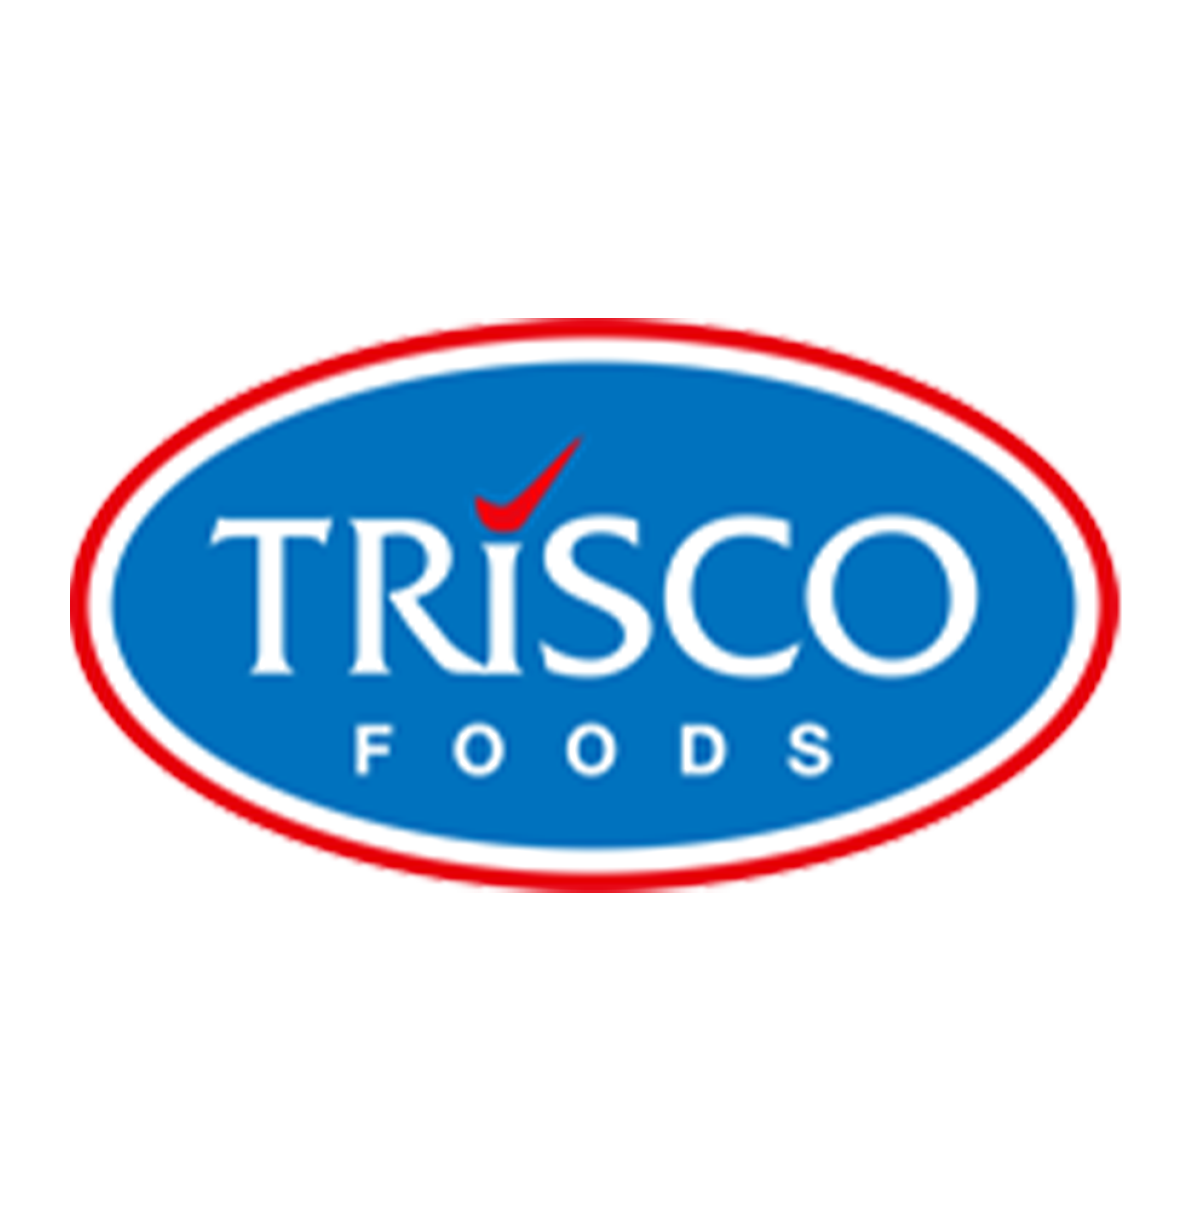 Trisco